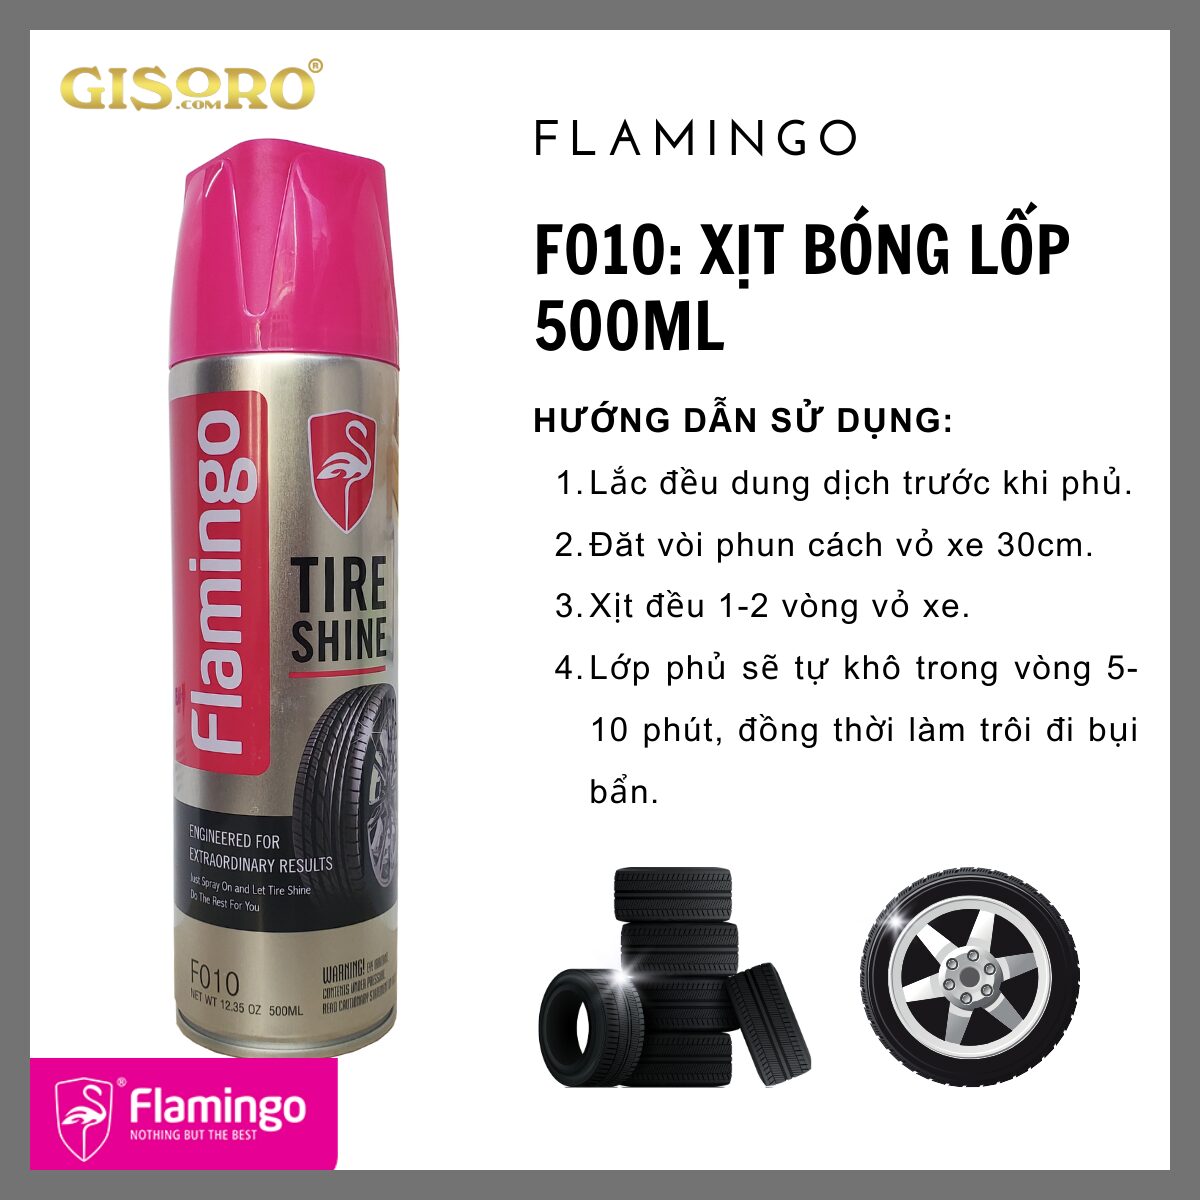 Flamingo Tire Shine F010 - Dưỡng Nhựa Nhám & Làm Bóng Lốp Xe 500ml